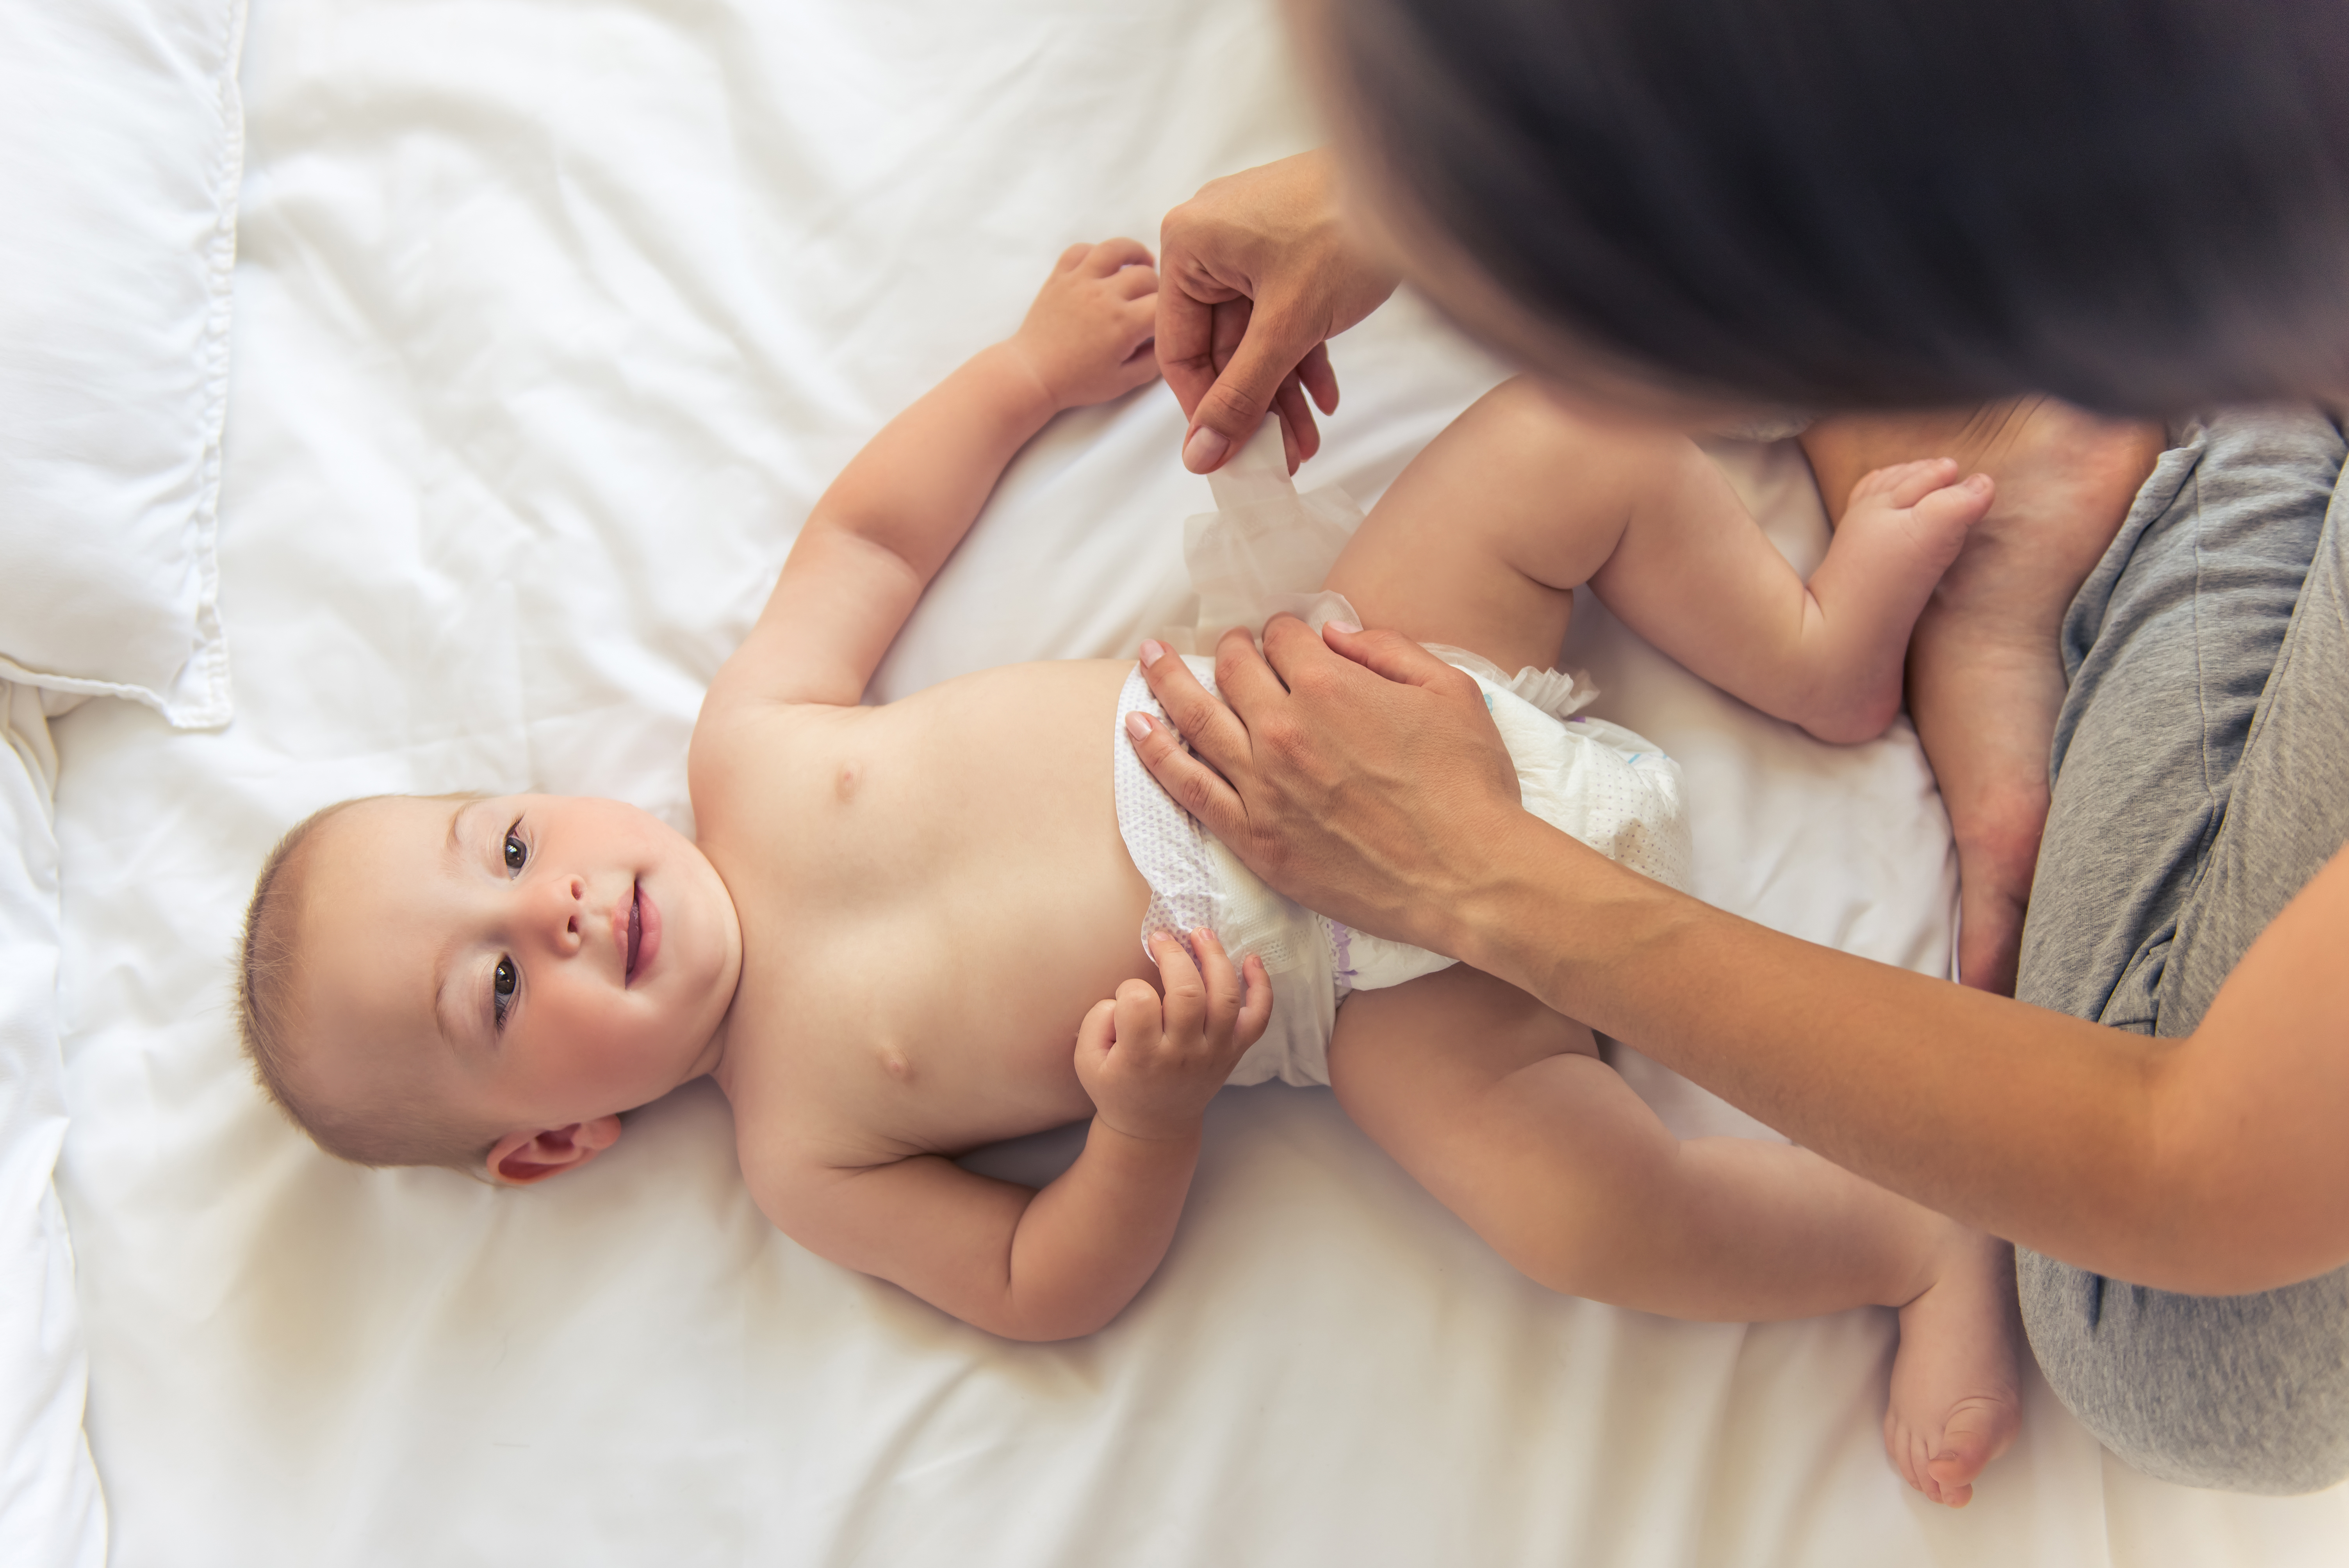 Une femme change la couche d'un bébé | Source : Shutterstock